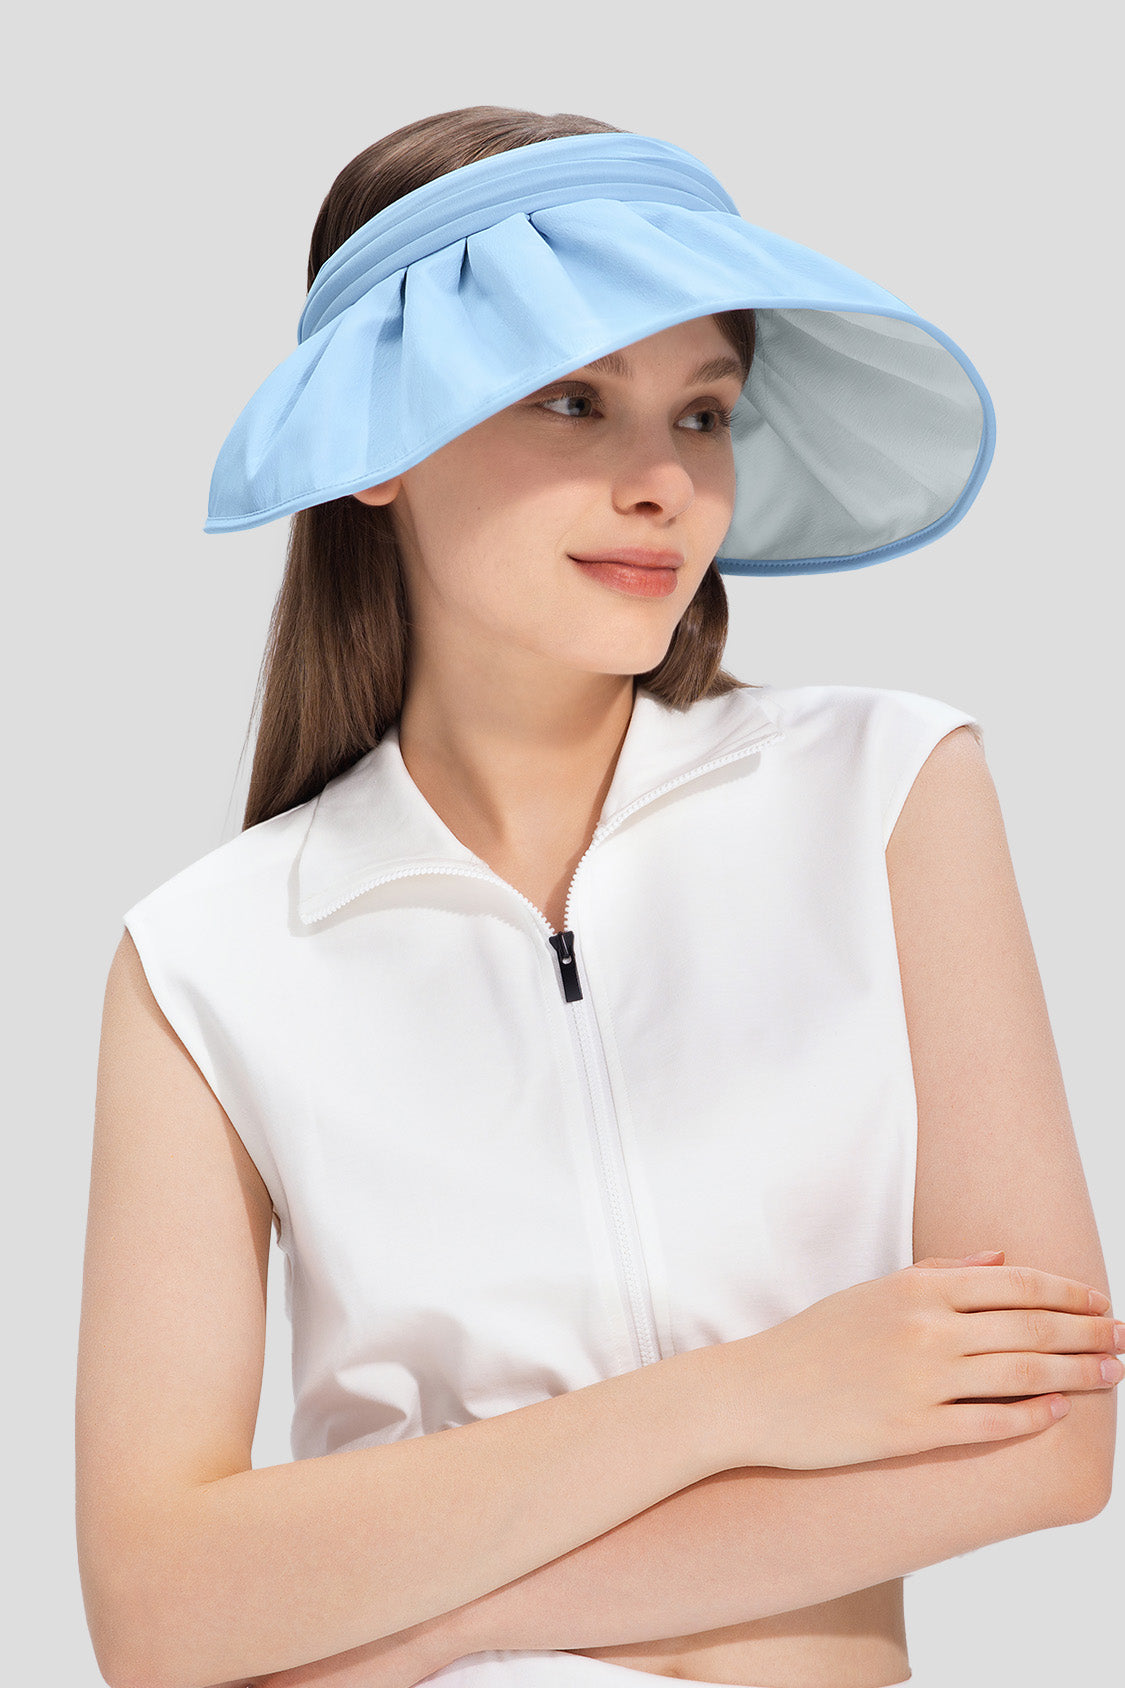 beneunder women's sun hats #color_blue